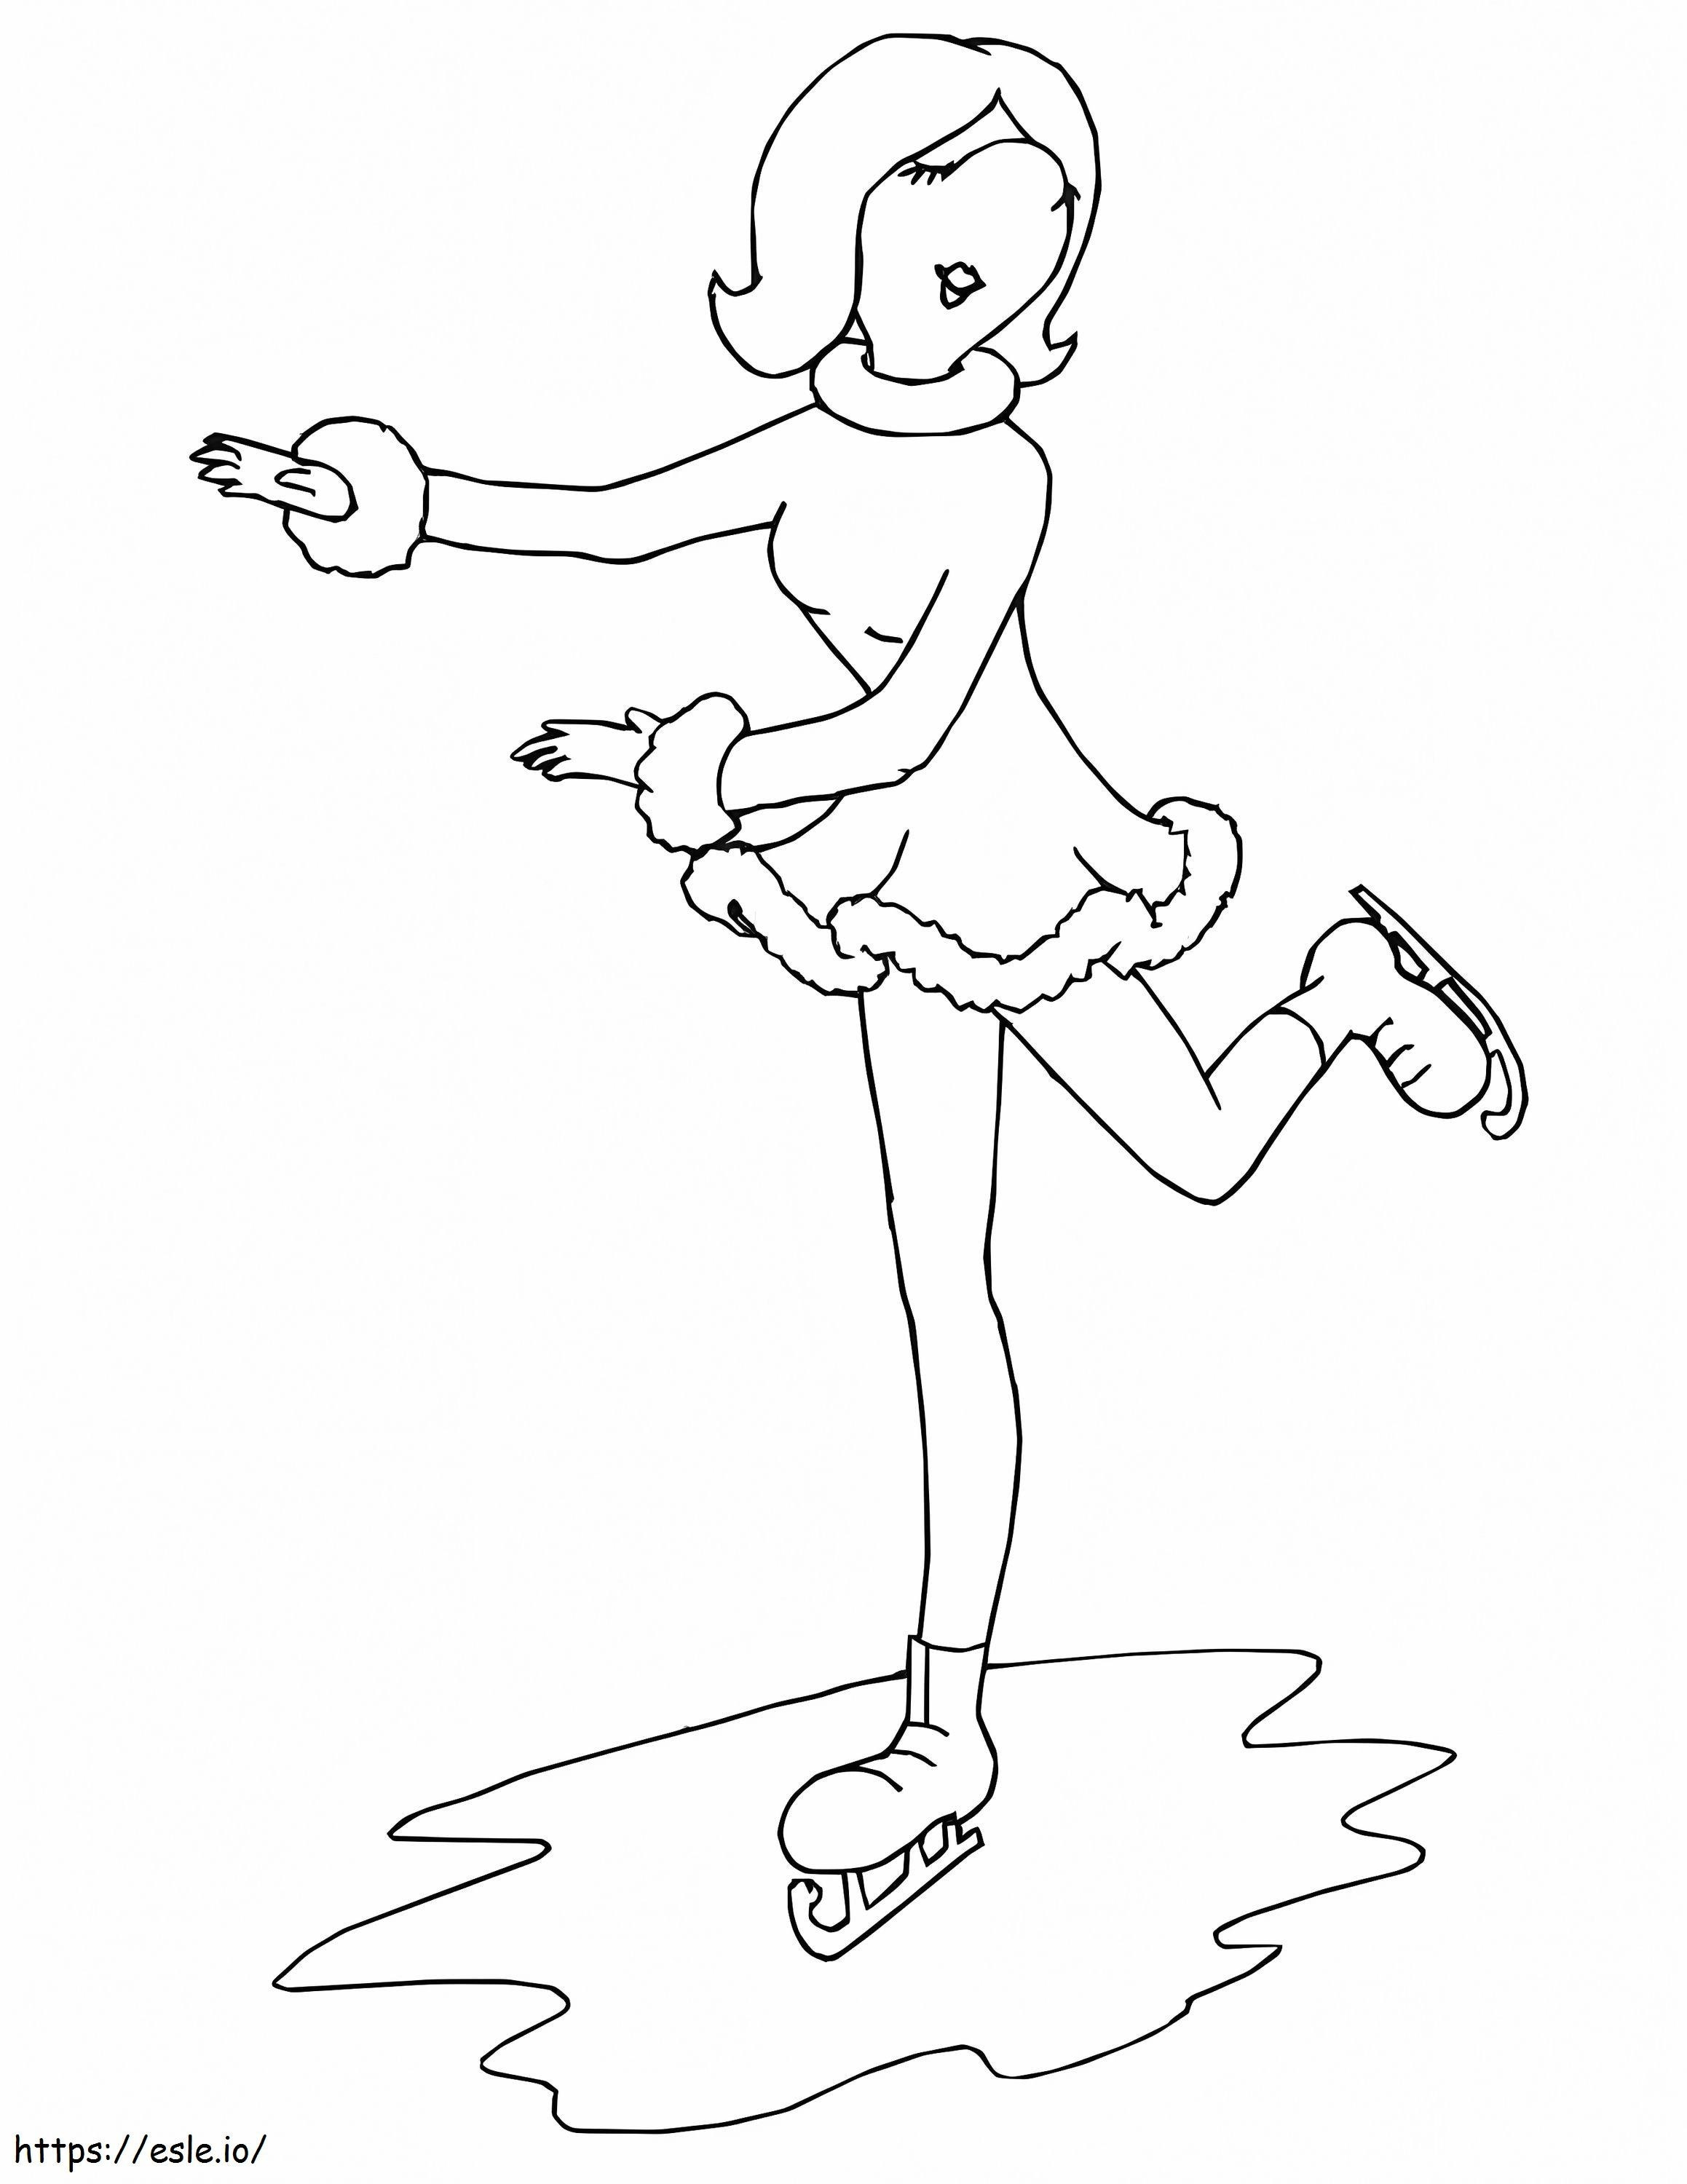 Esboço de patinação no gelo feminina para colorir